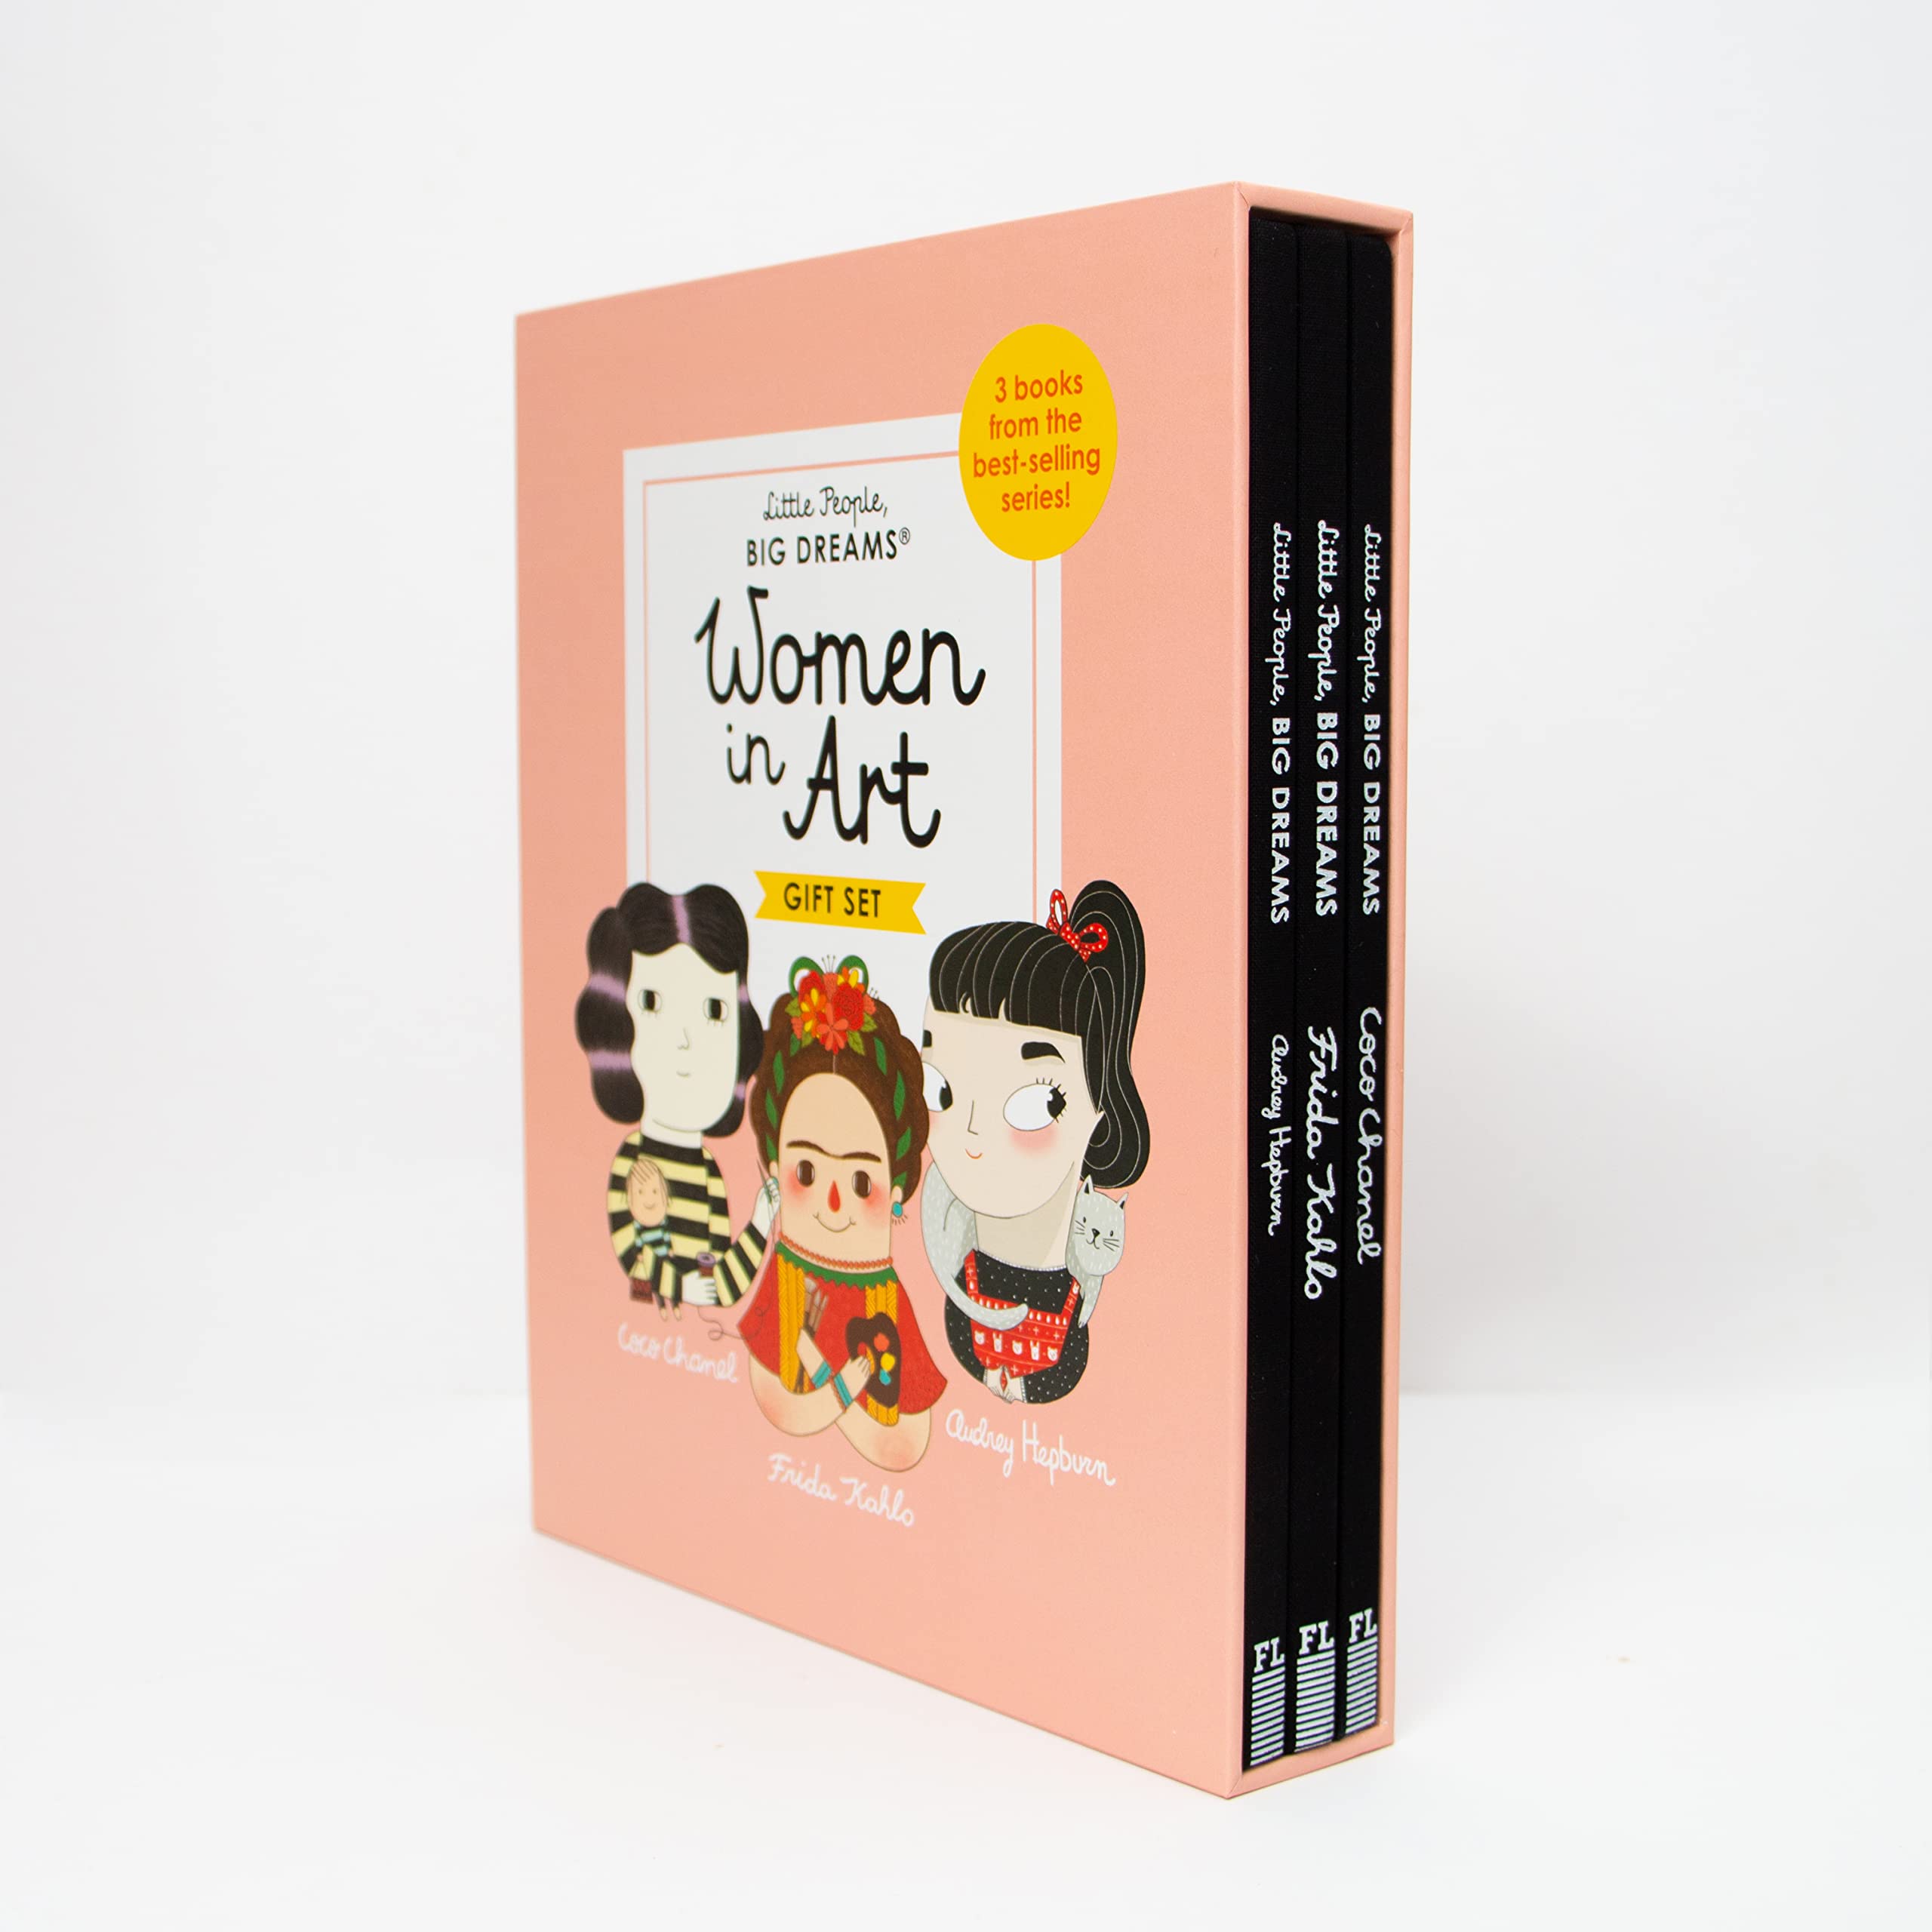 Little People, Big Dreams: Women in Art - The English Bookshop Kuwait